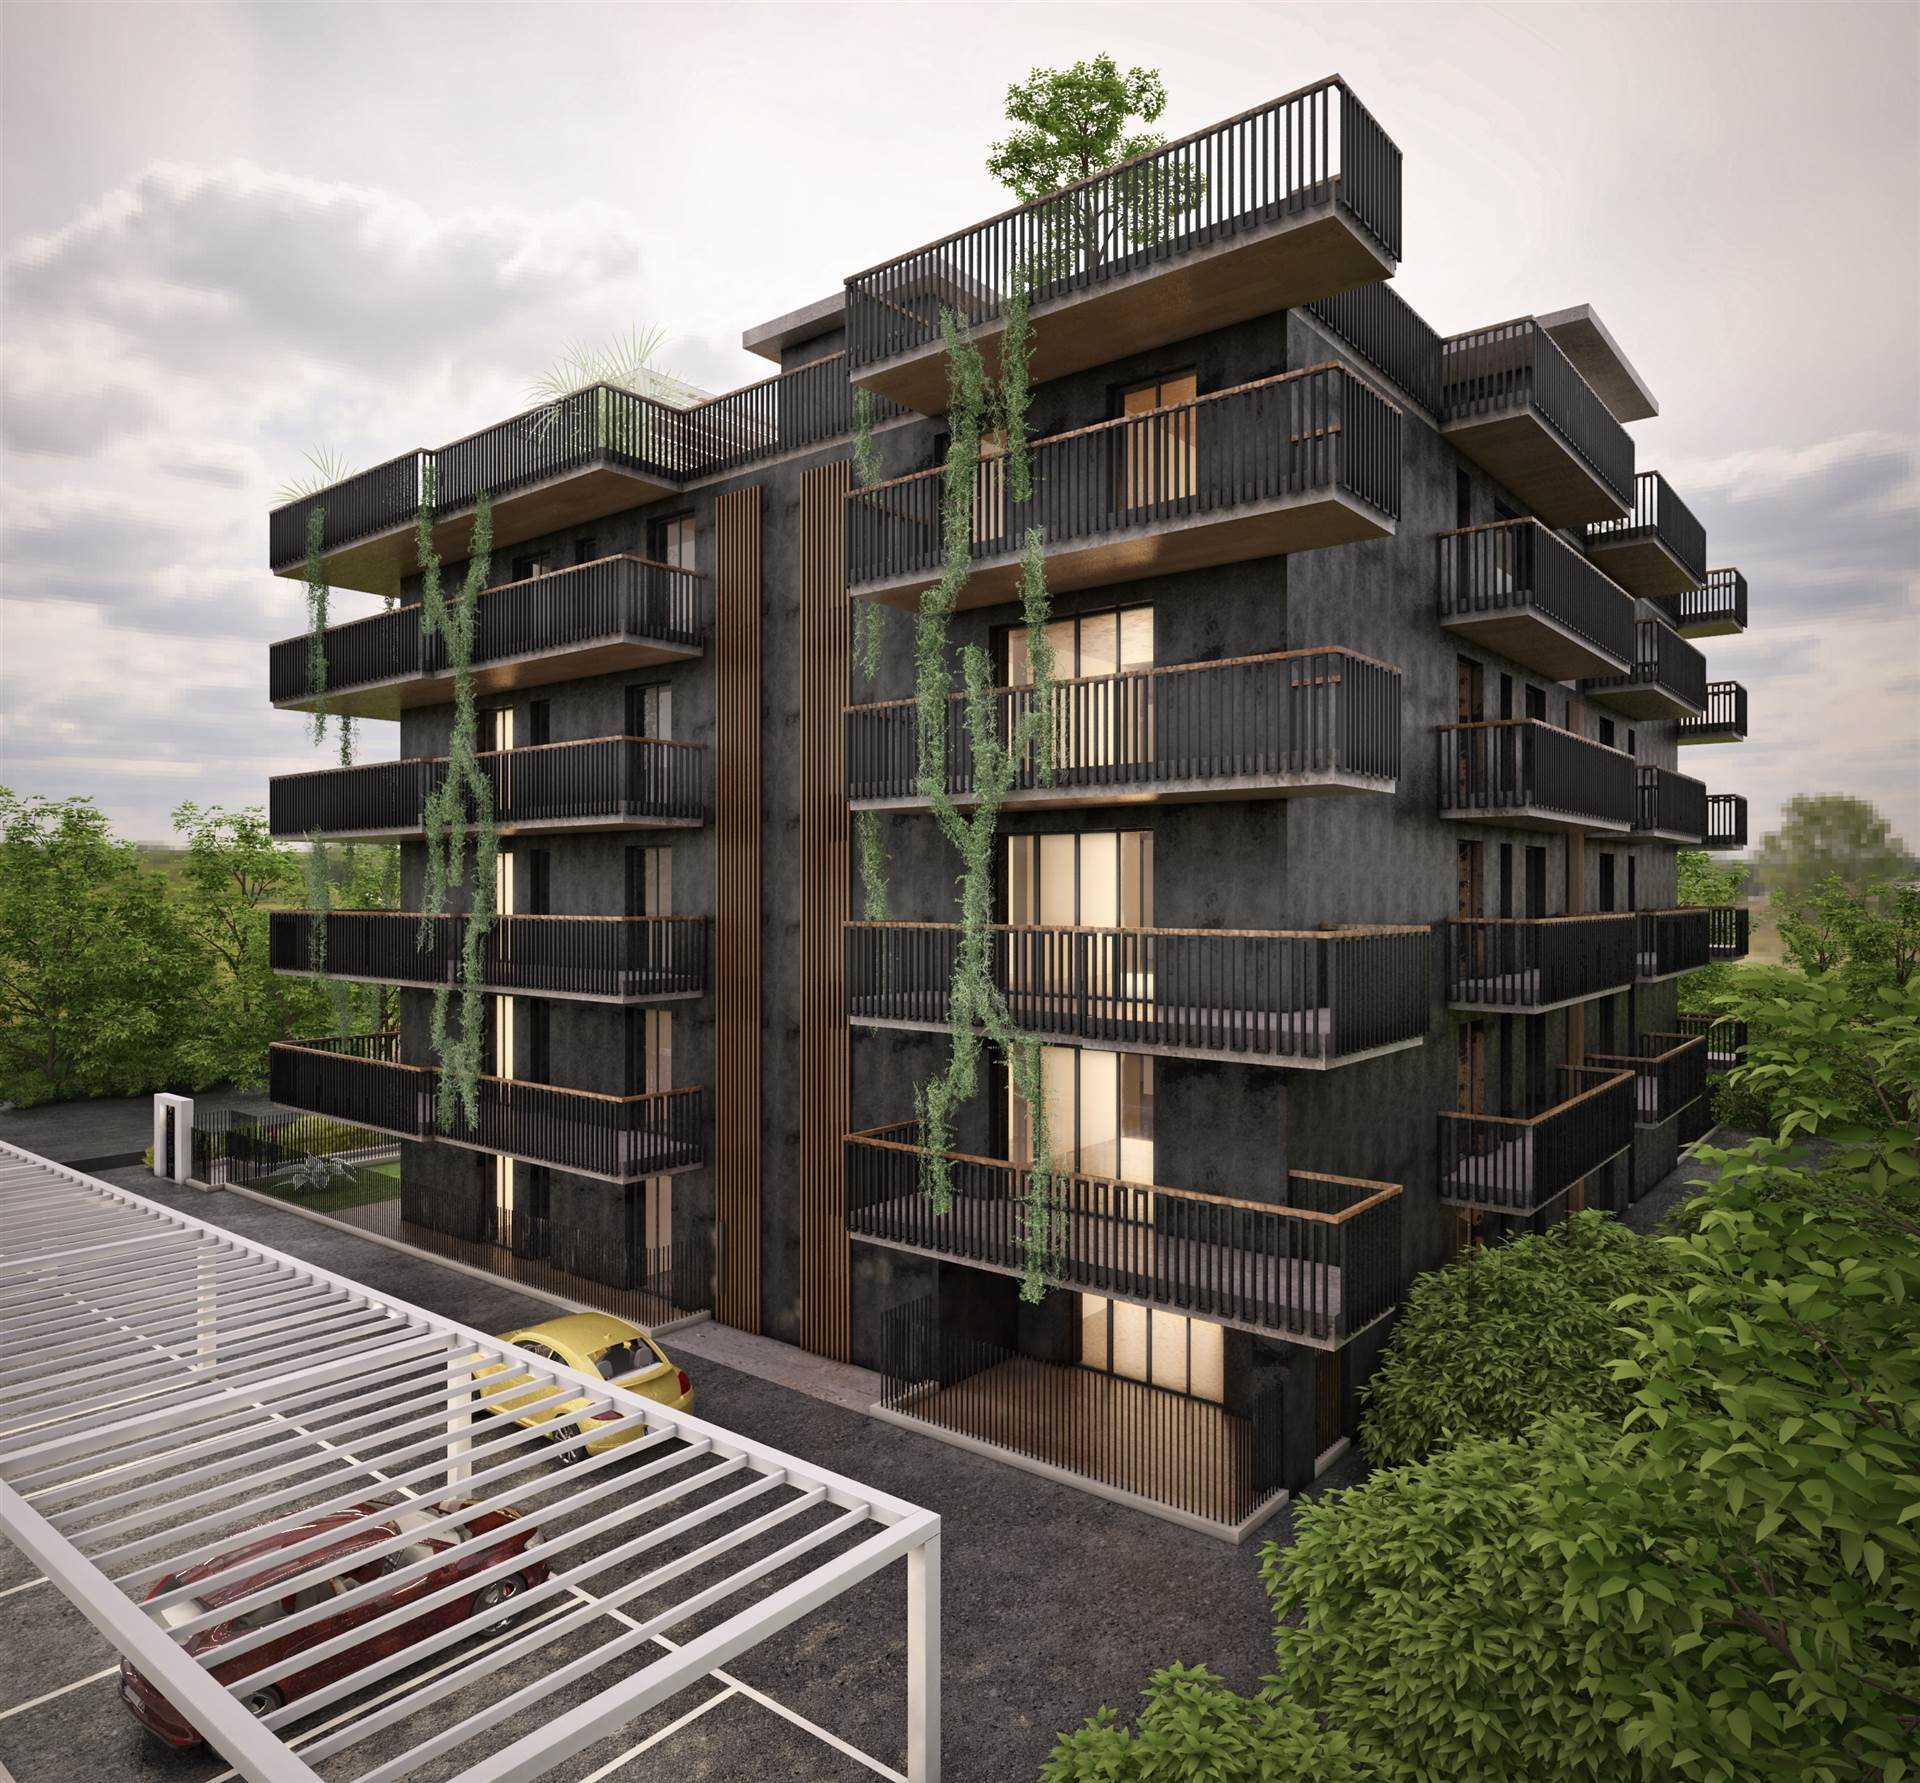 Nuova costruzione in vendita a Salerno, in Via Delle Calabrie 19. L'immobile di 107 mq si trova al primo piano ed è caratterizzato dalla classe 